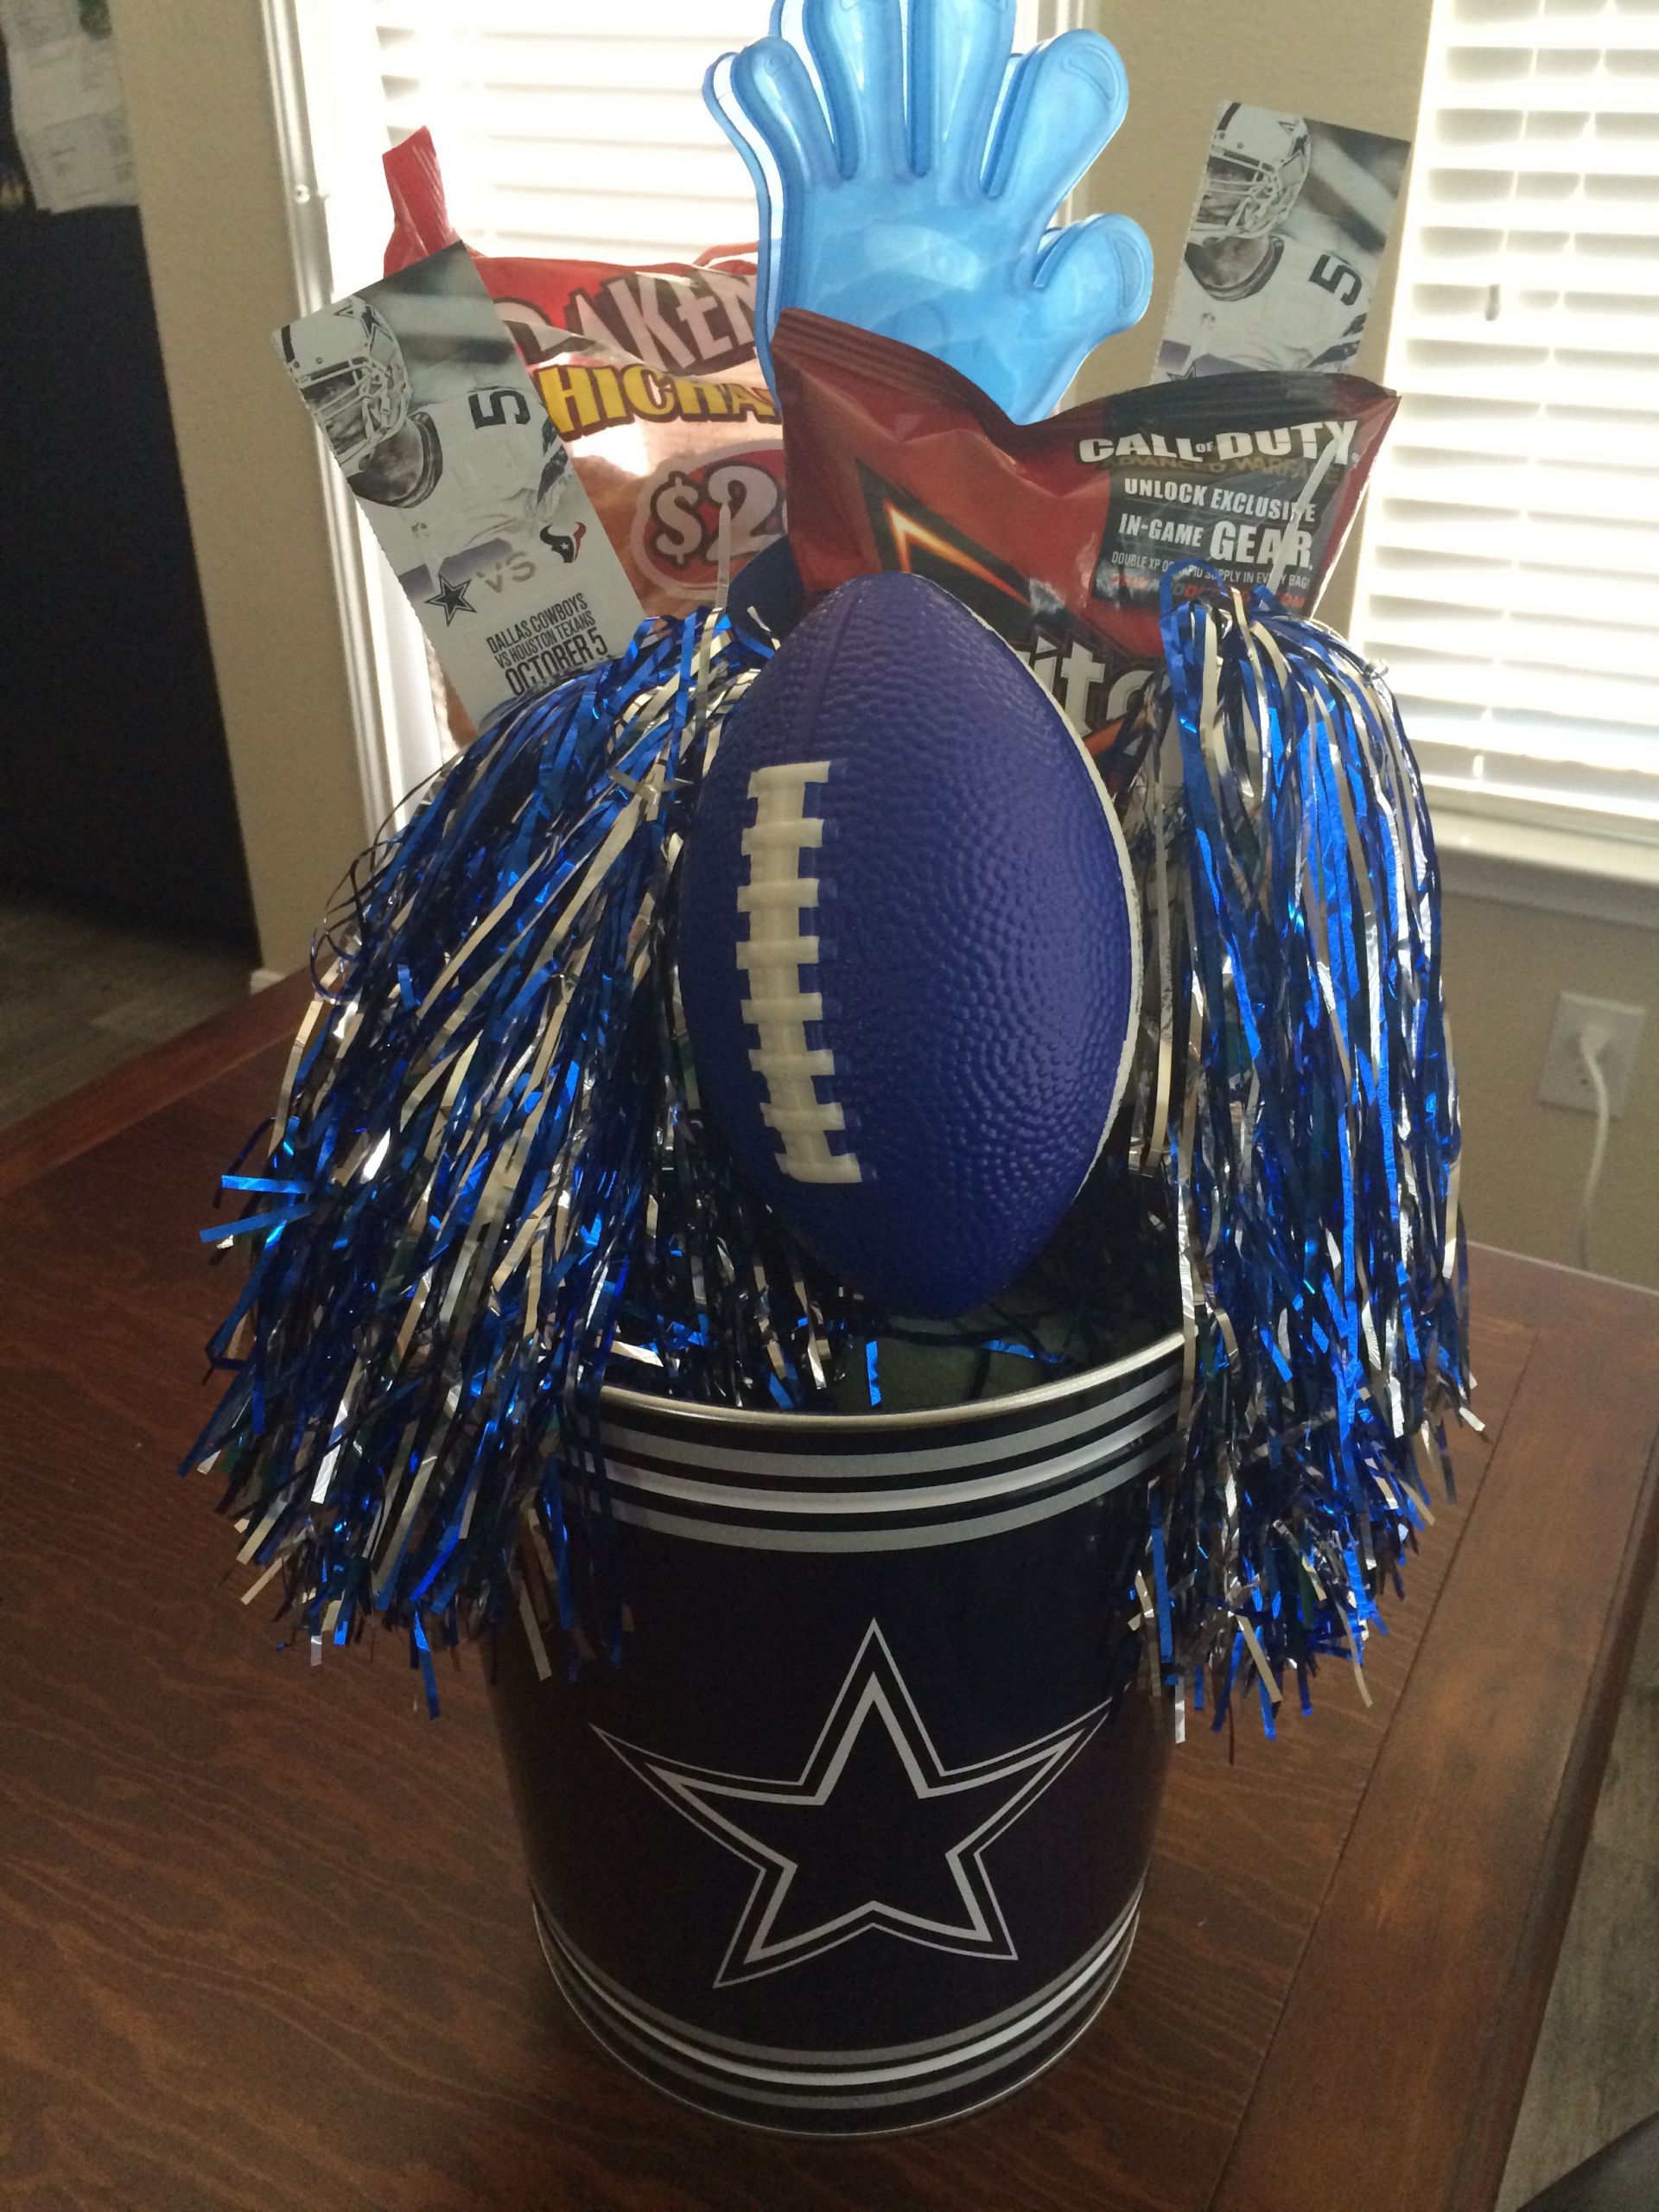 Dallas Cowboys Fan Gift Ideas
 Dallas Cowboys Football t basket I made for my